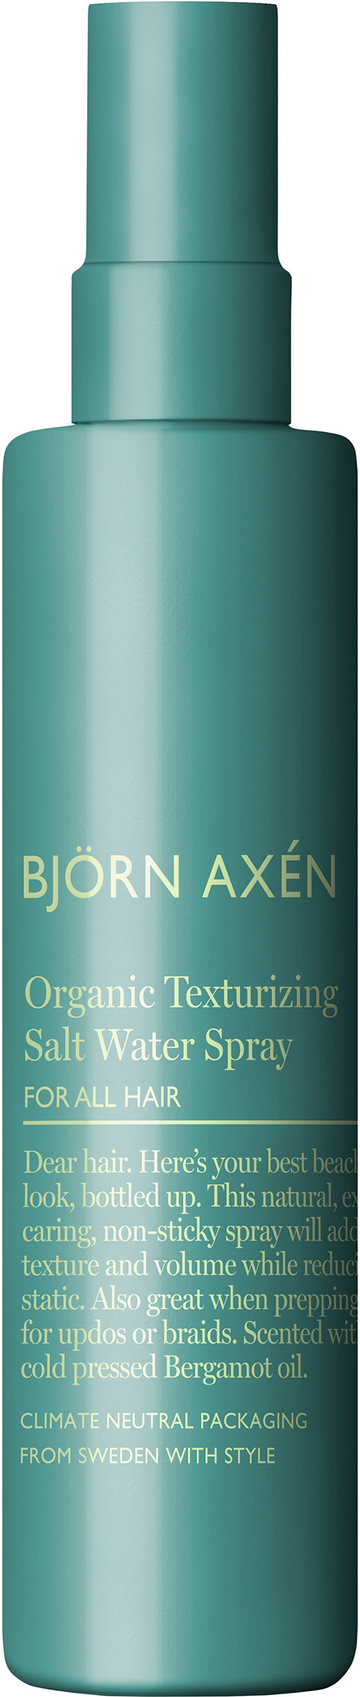 Björn Axén Organic Texturizing salt water spray